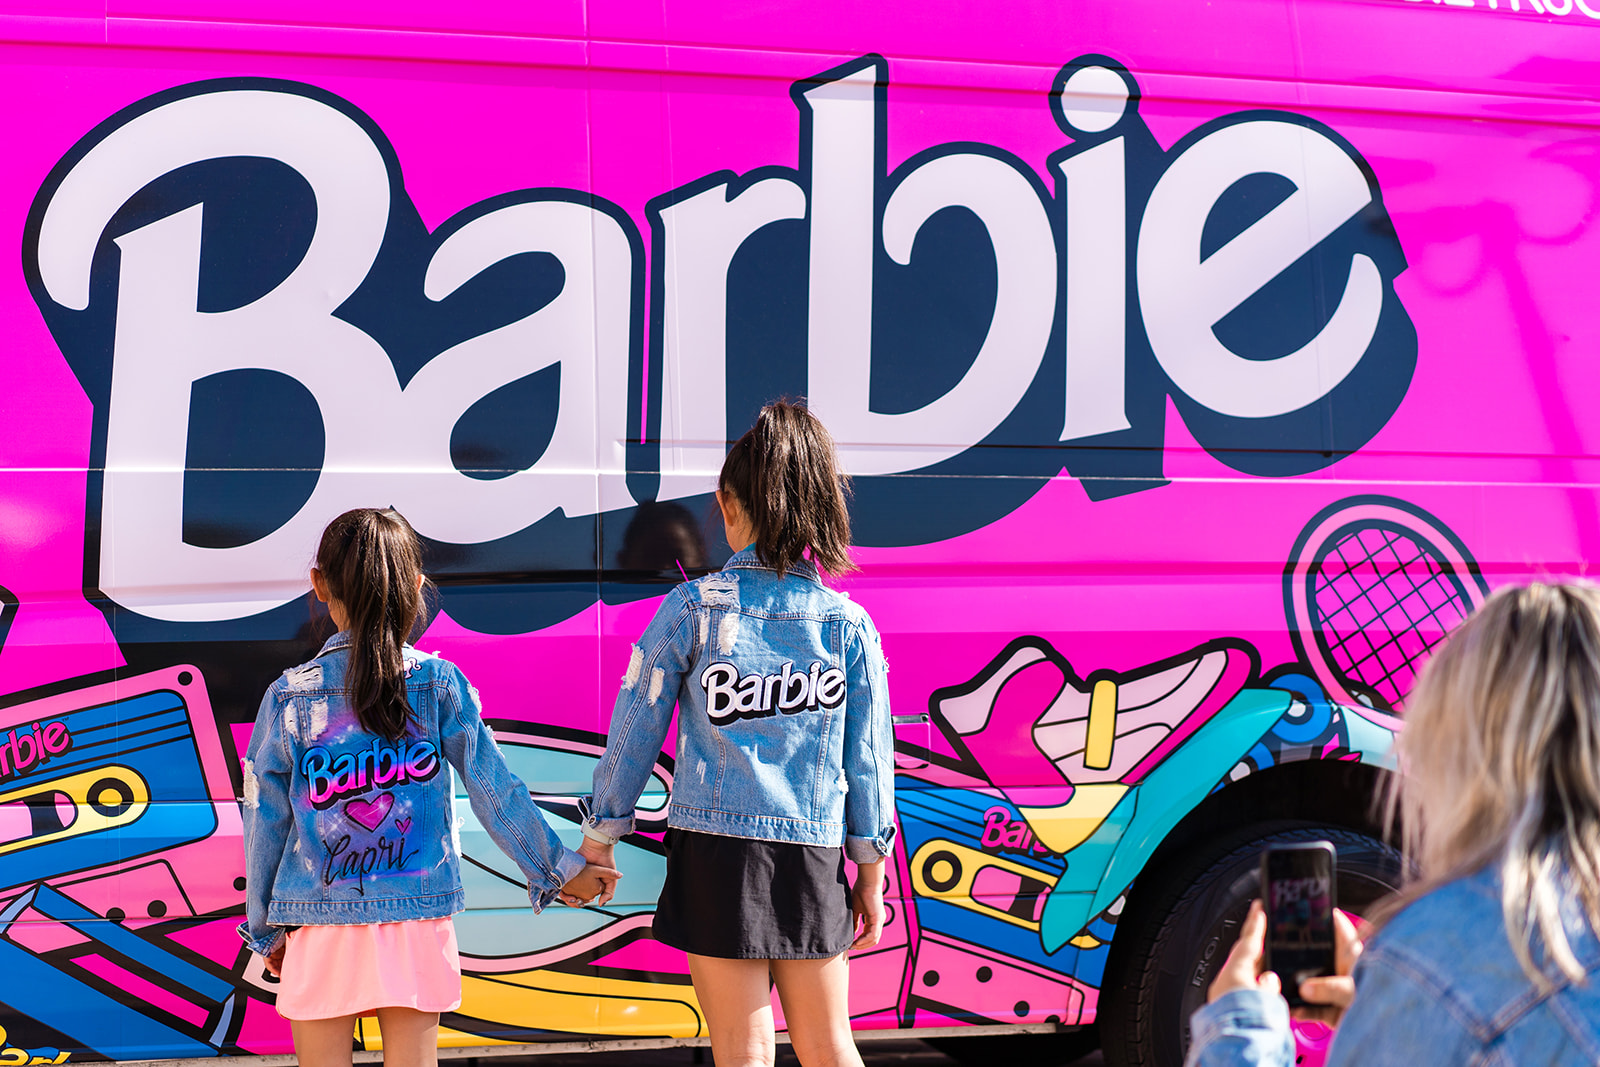 Barbie's influential branding journey